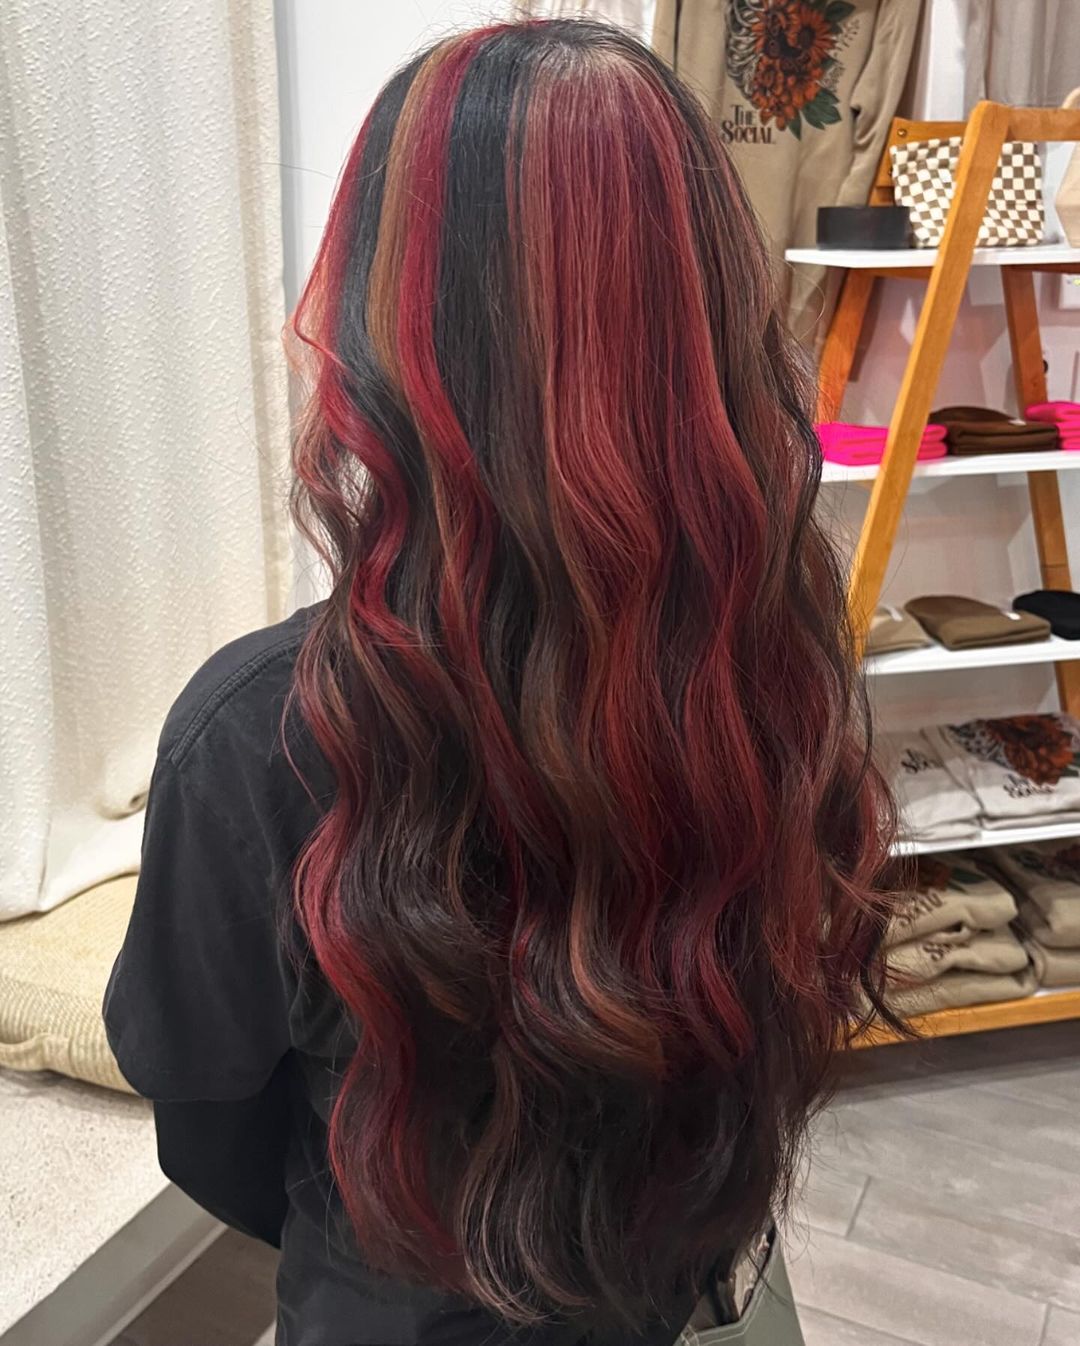 capelli rossi e neri